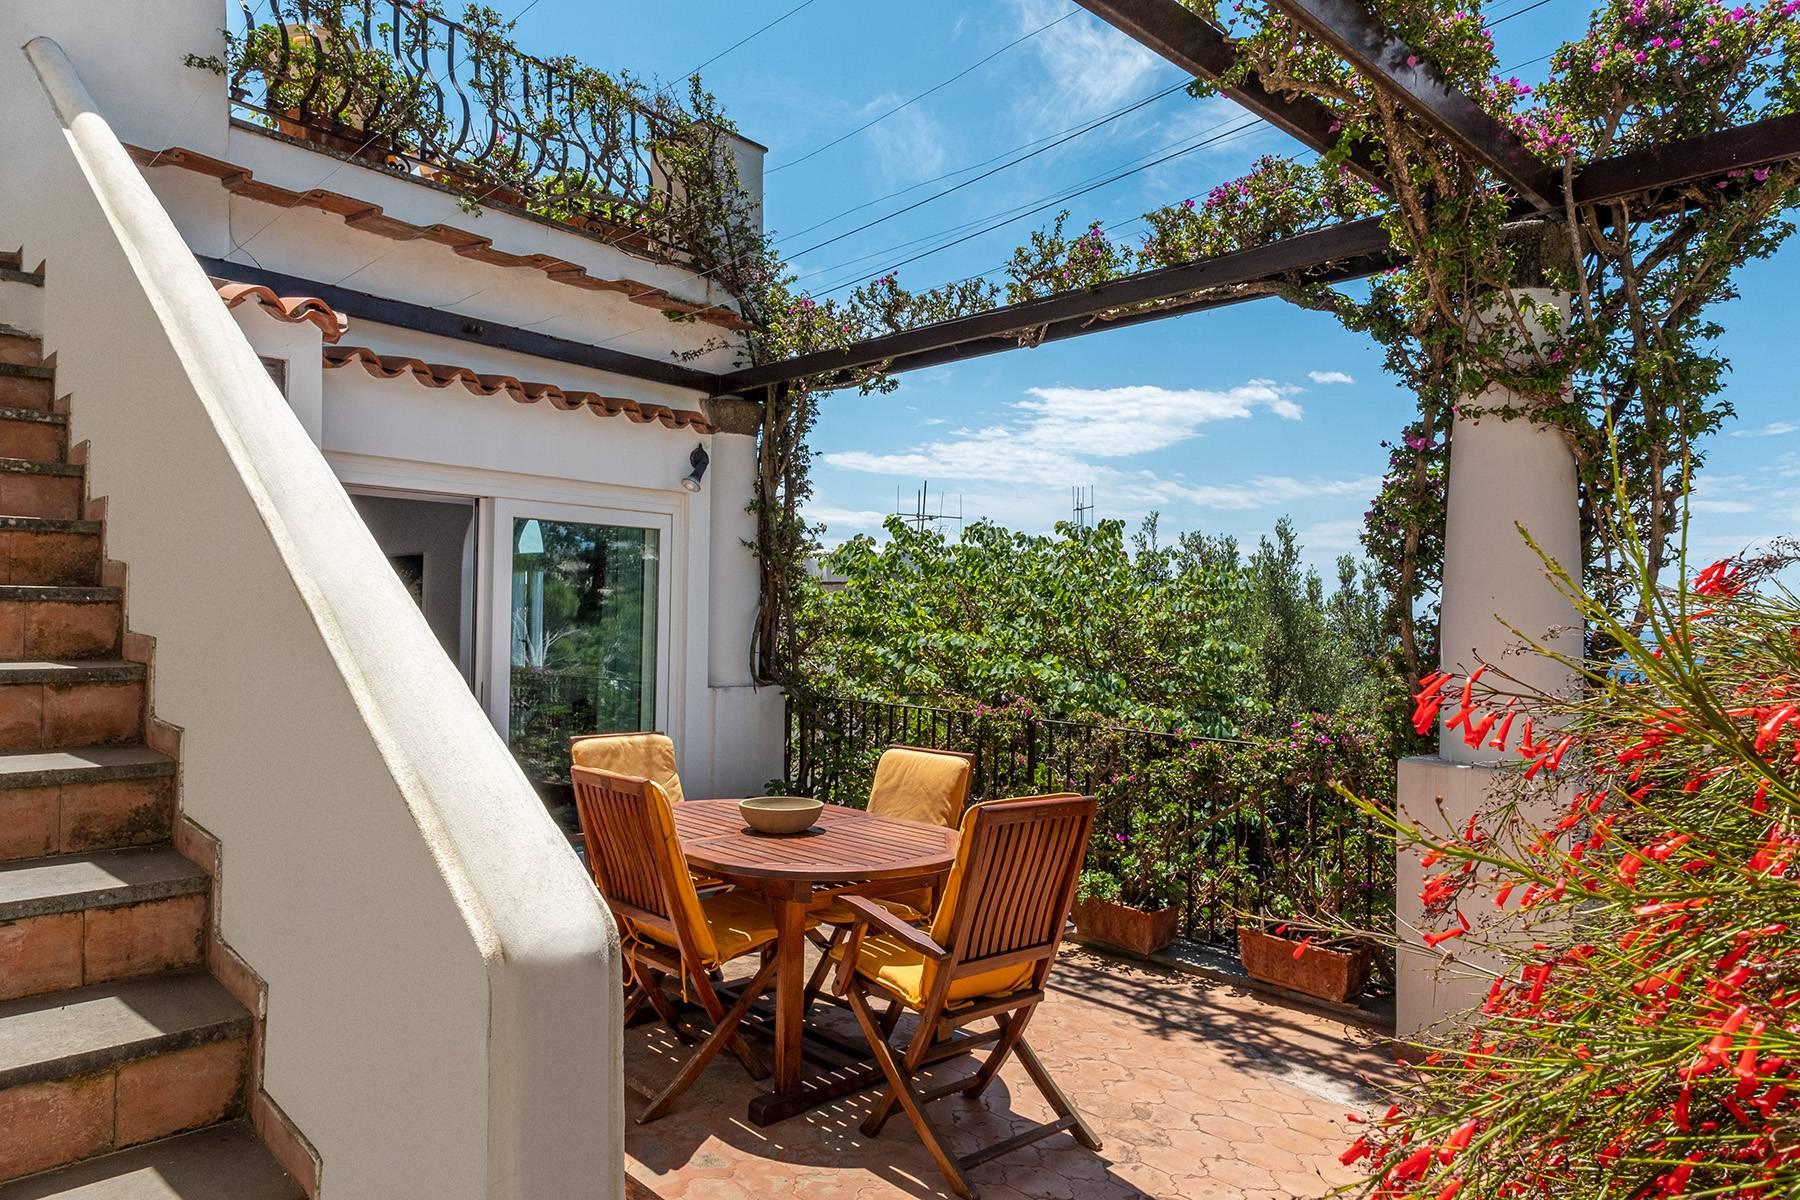 Magnificent villa in the center of Capri overlooking the sea - 19